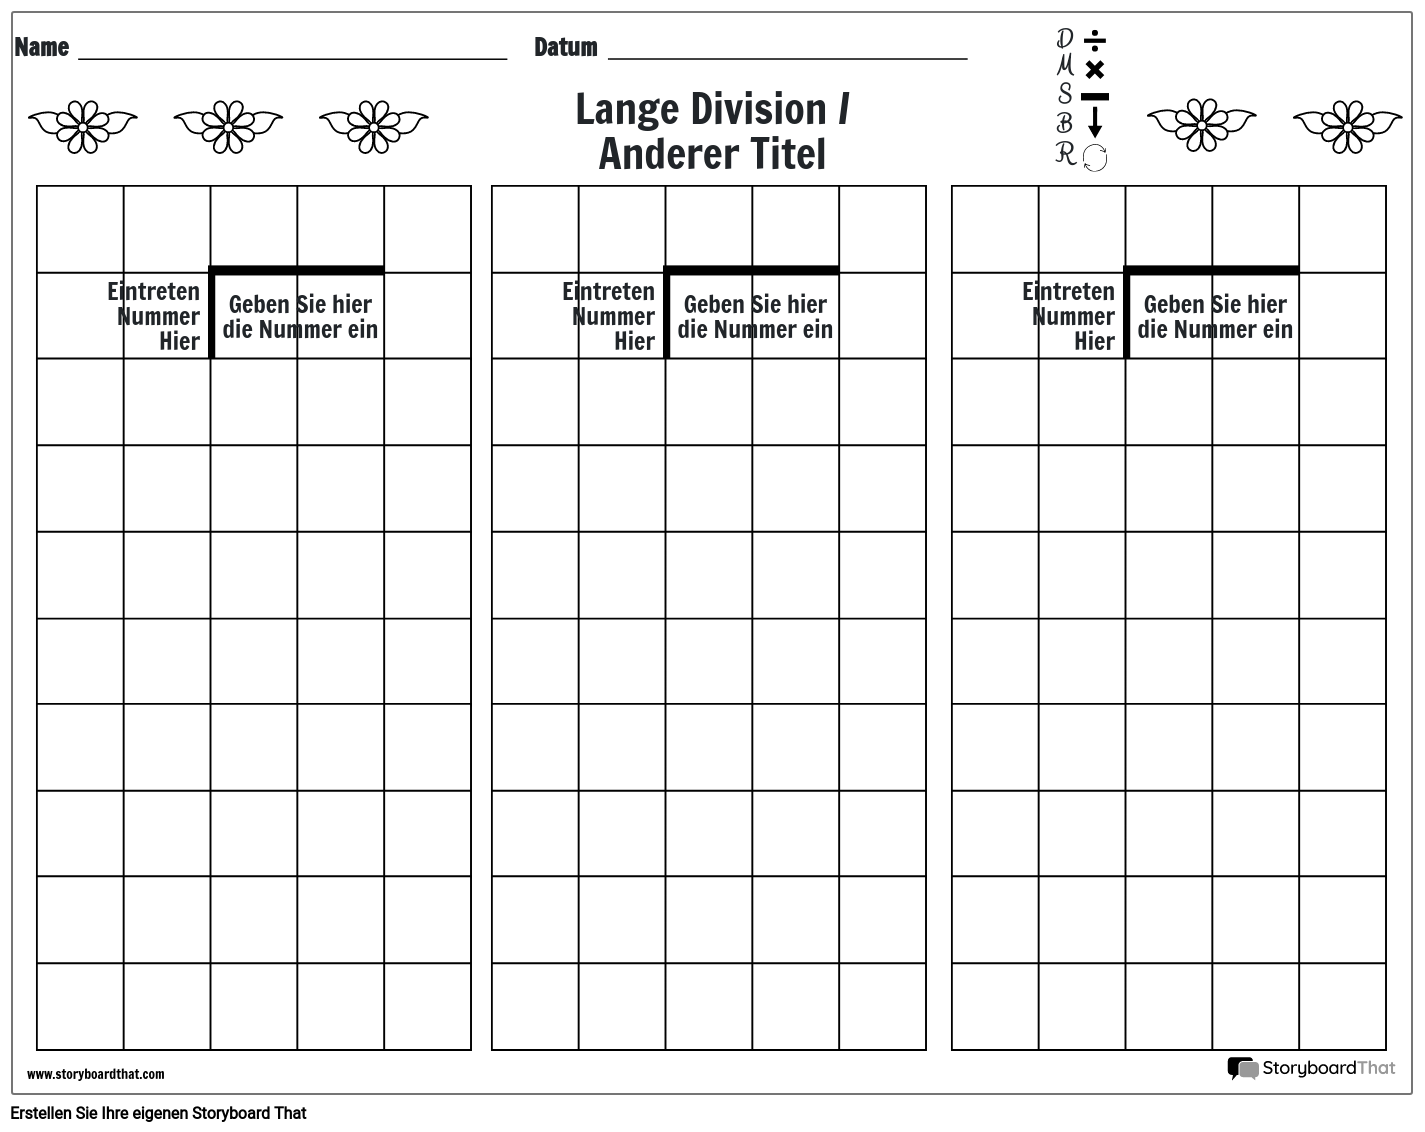 Lange Division 8